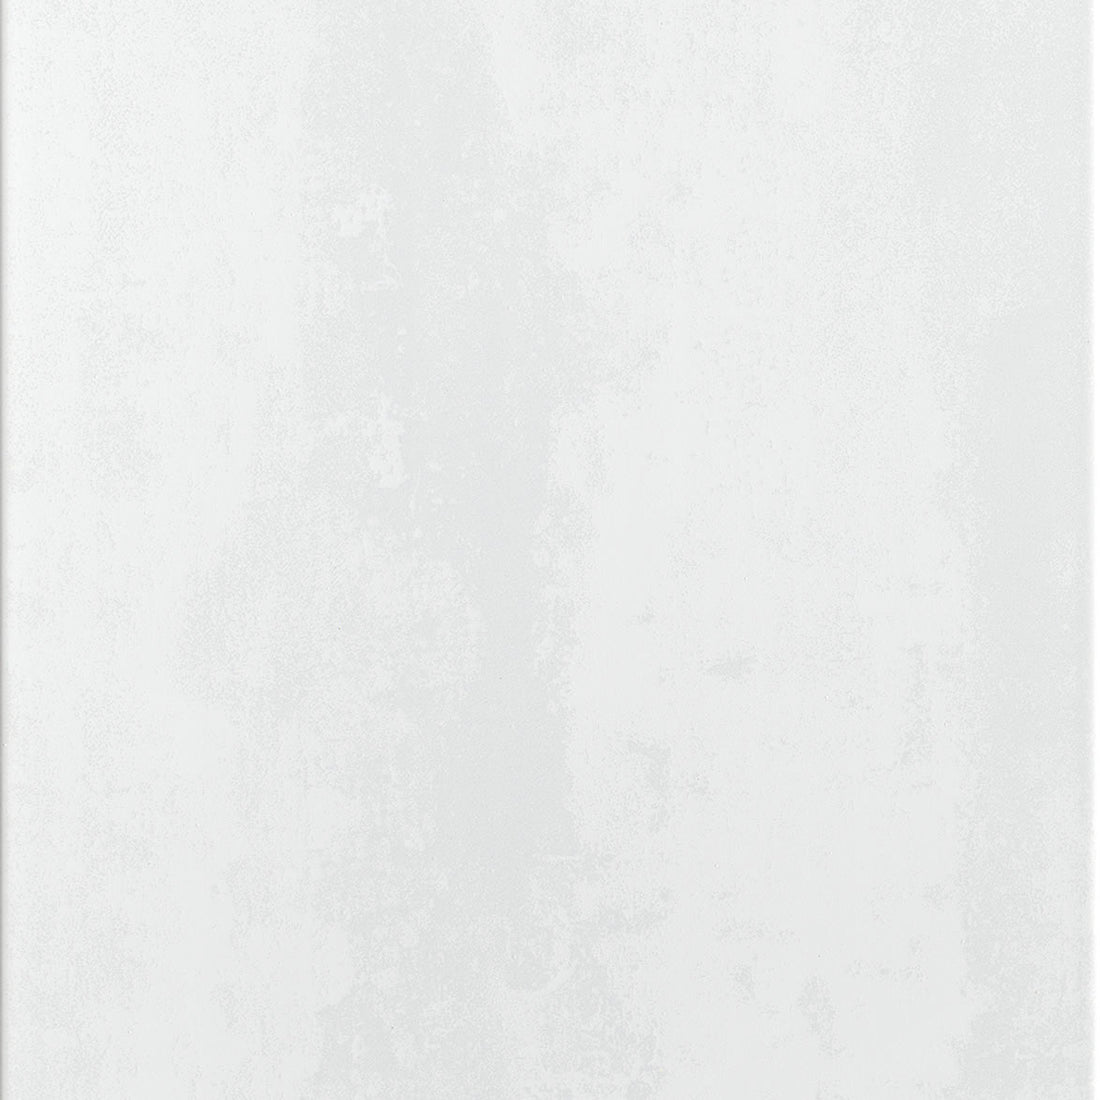 Lastino White Wall Tile - 30 x 60cm